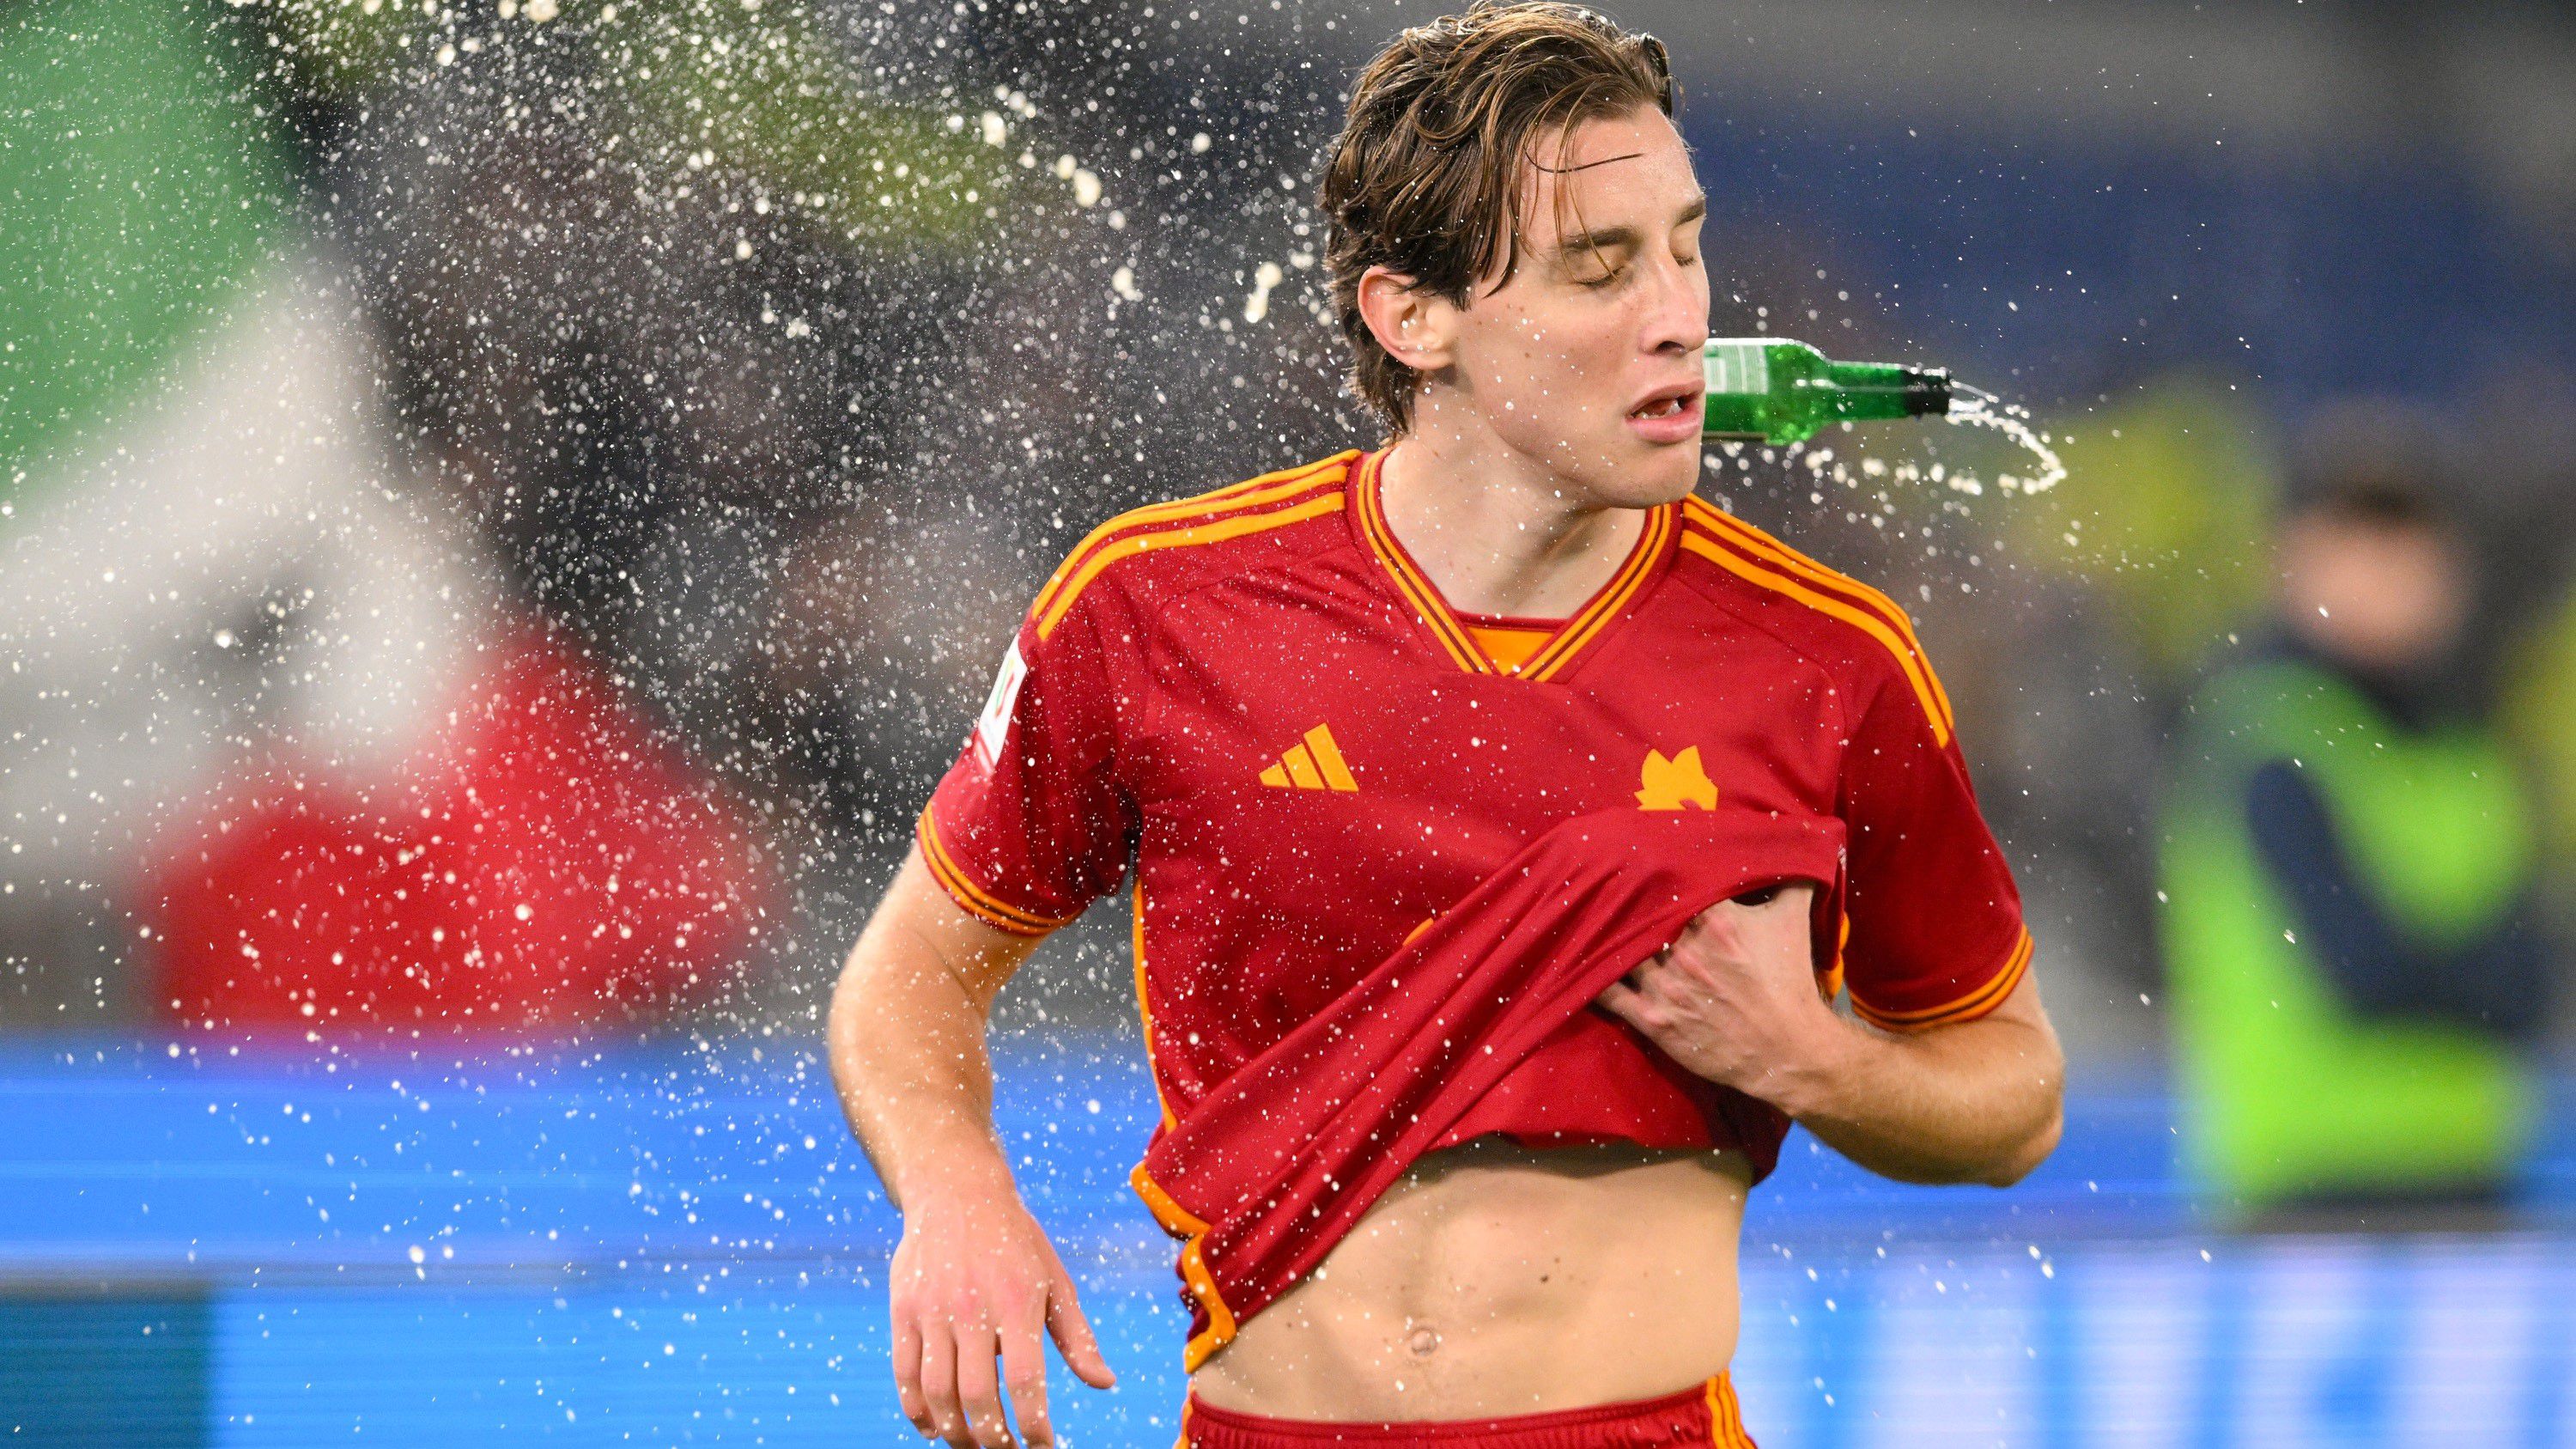 Edouardo Bove tarkóján pattant az üveg vagy műanyag tárgy, szerencsére a fiatal játékos nem sérült meg. (Fotó: Getty Images)